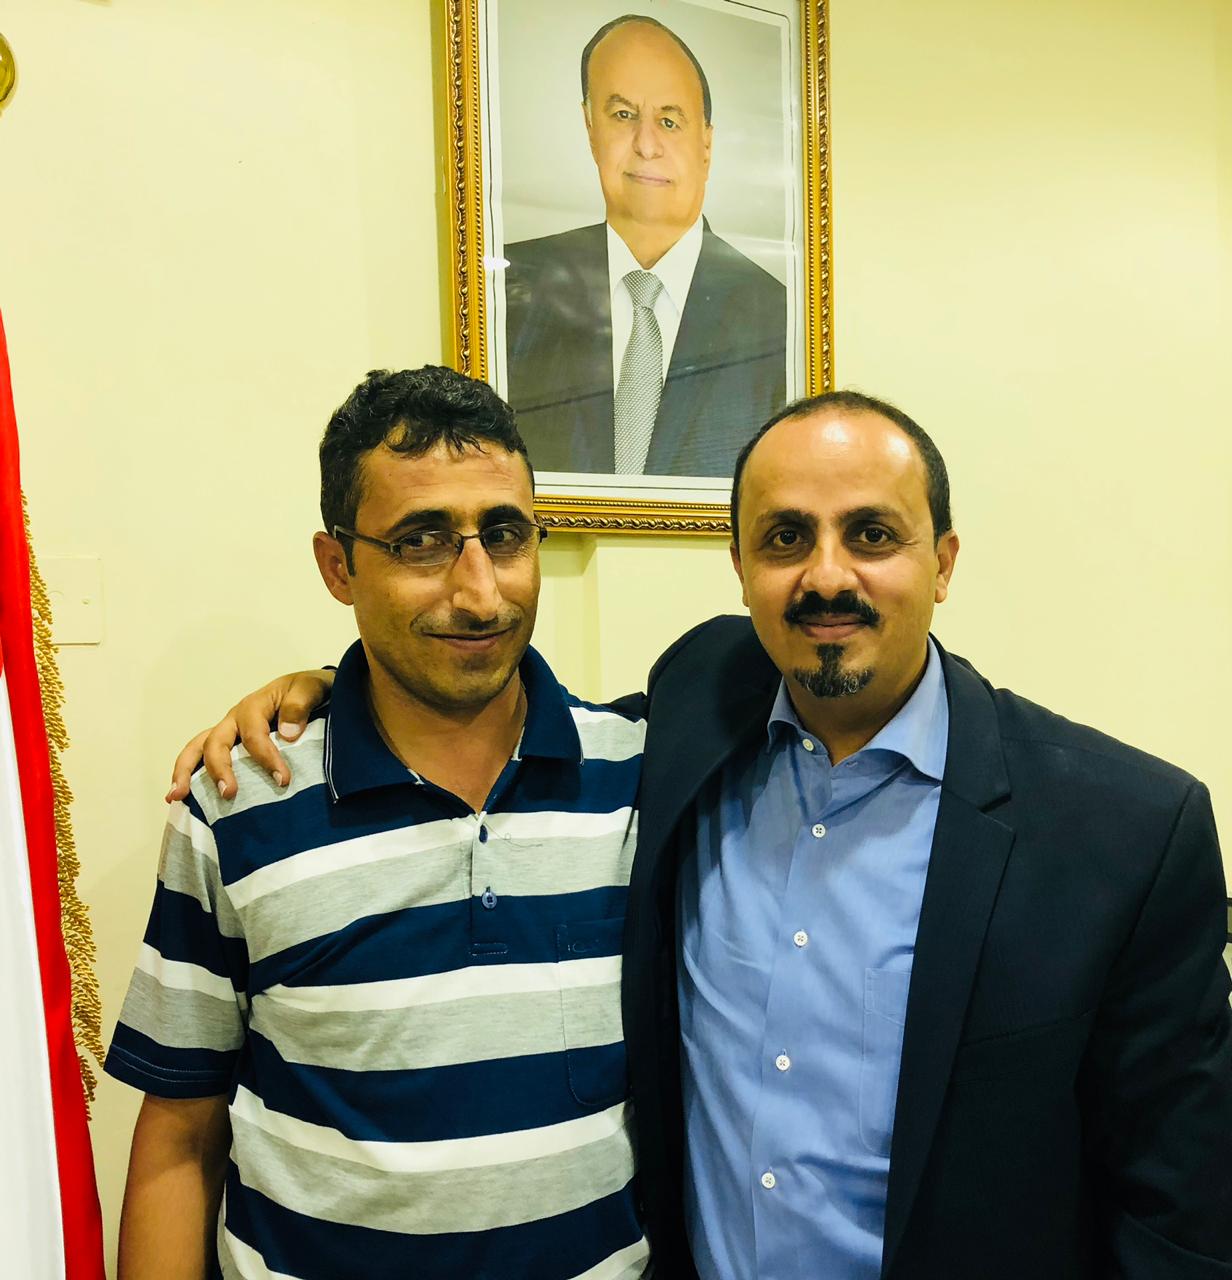 وزير الاعلام اليمنى مع أحد الناجين من سجون الحوثى